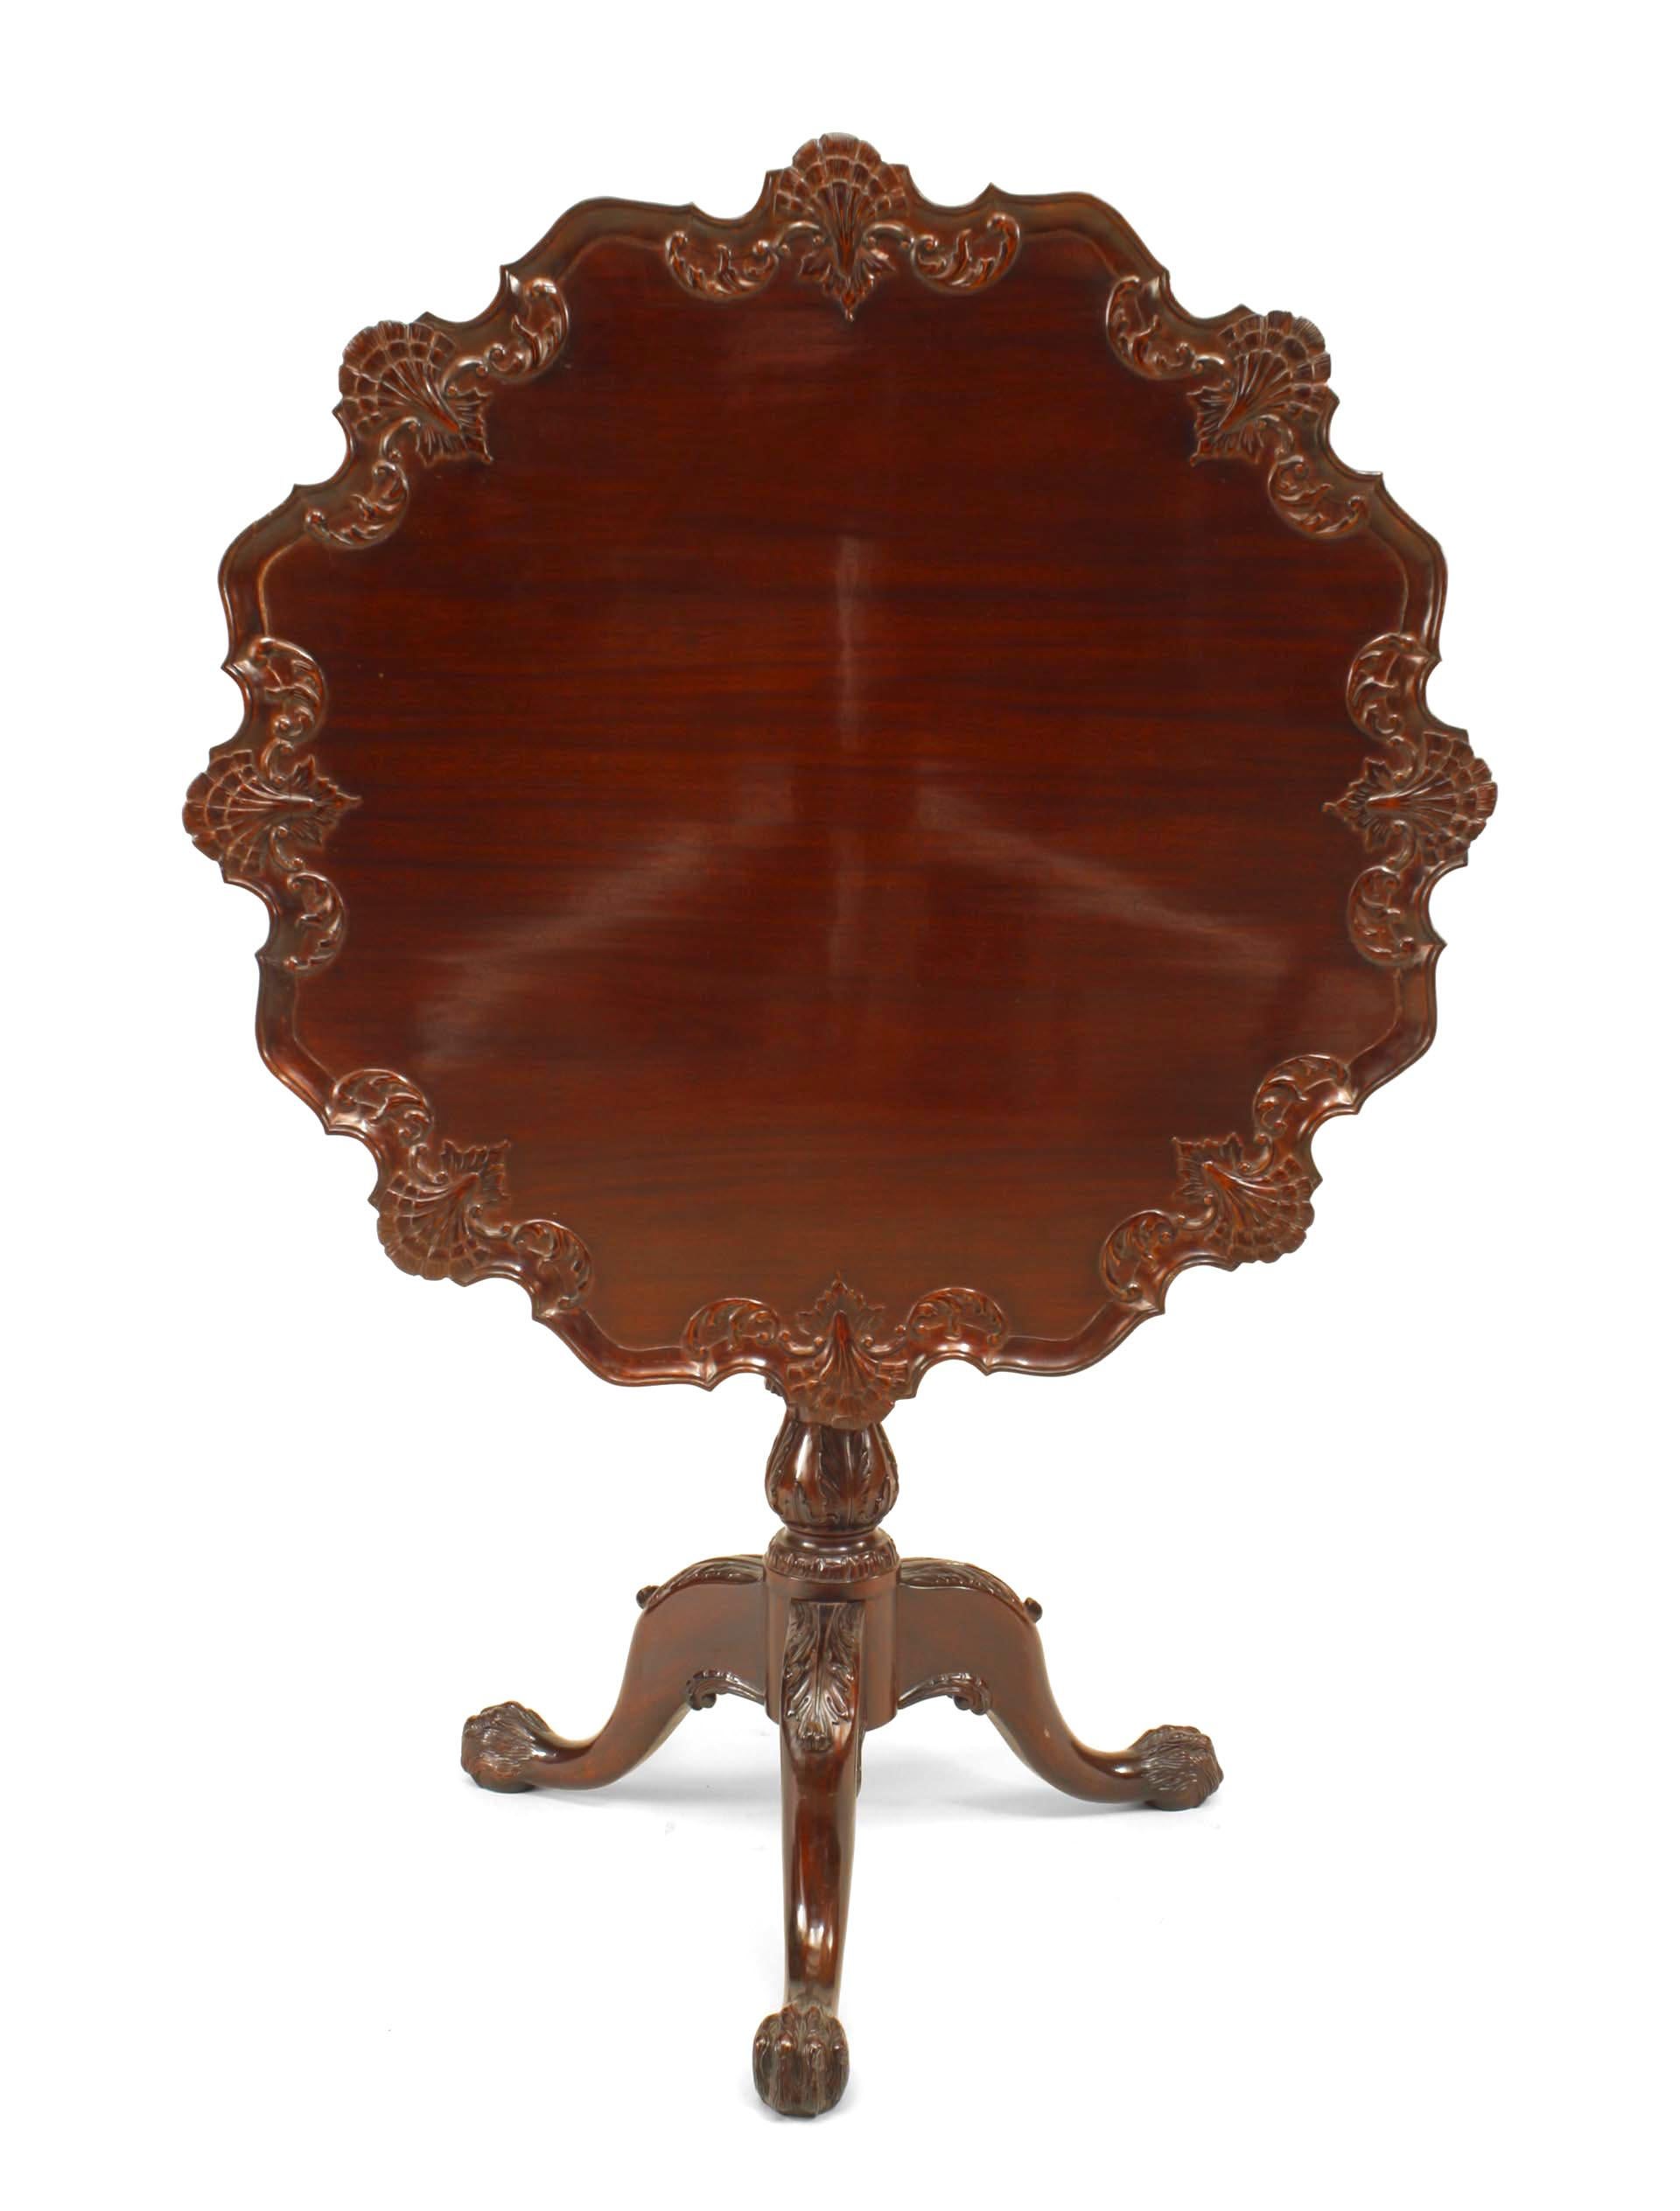 Englischer Kipptisch aus Mahagoni im Chippendale-Stil des 20. Jahrhunderts mit geschnitztem Muscheldesign an der Oberkante.